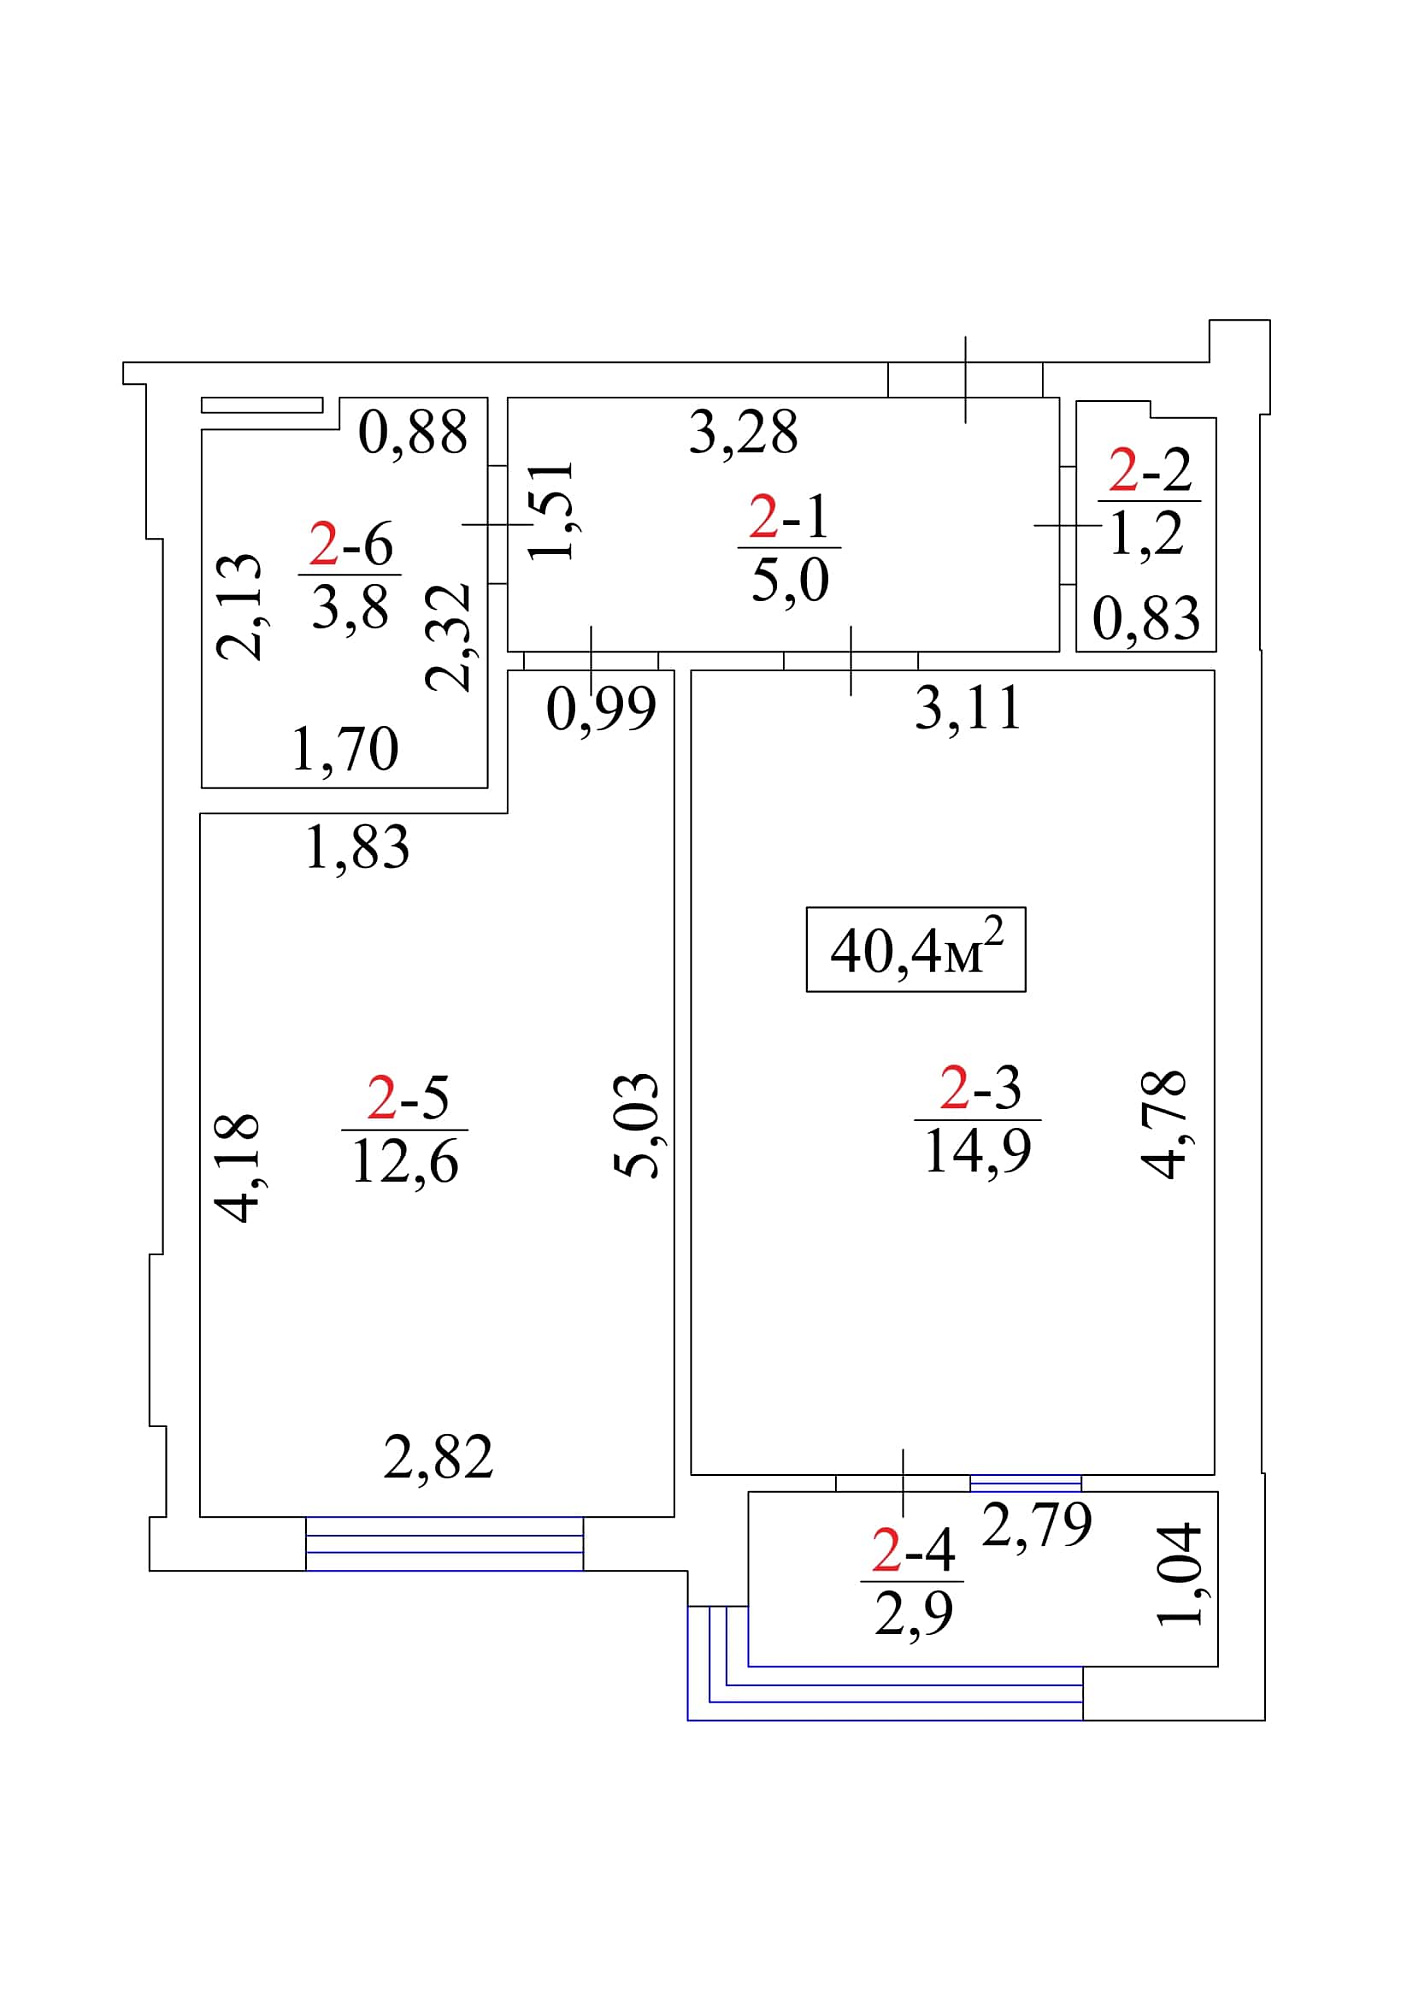 Планування 1-к квартира площею 40.4м2, AB-01-01/00002.